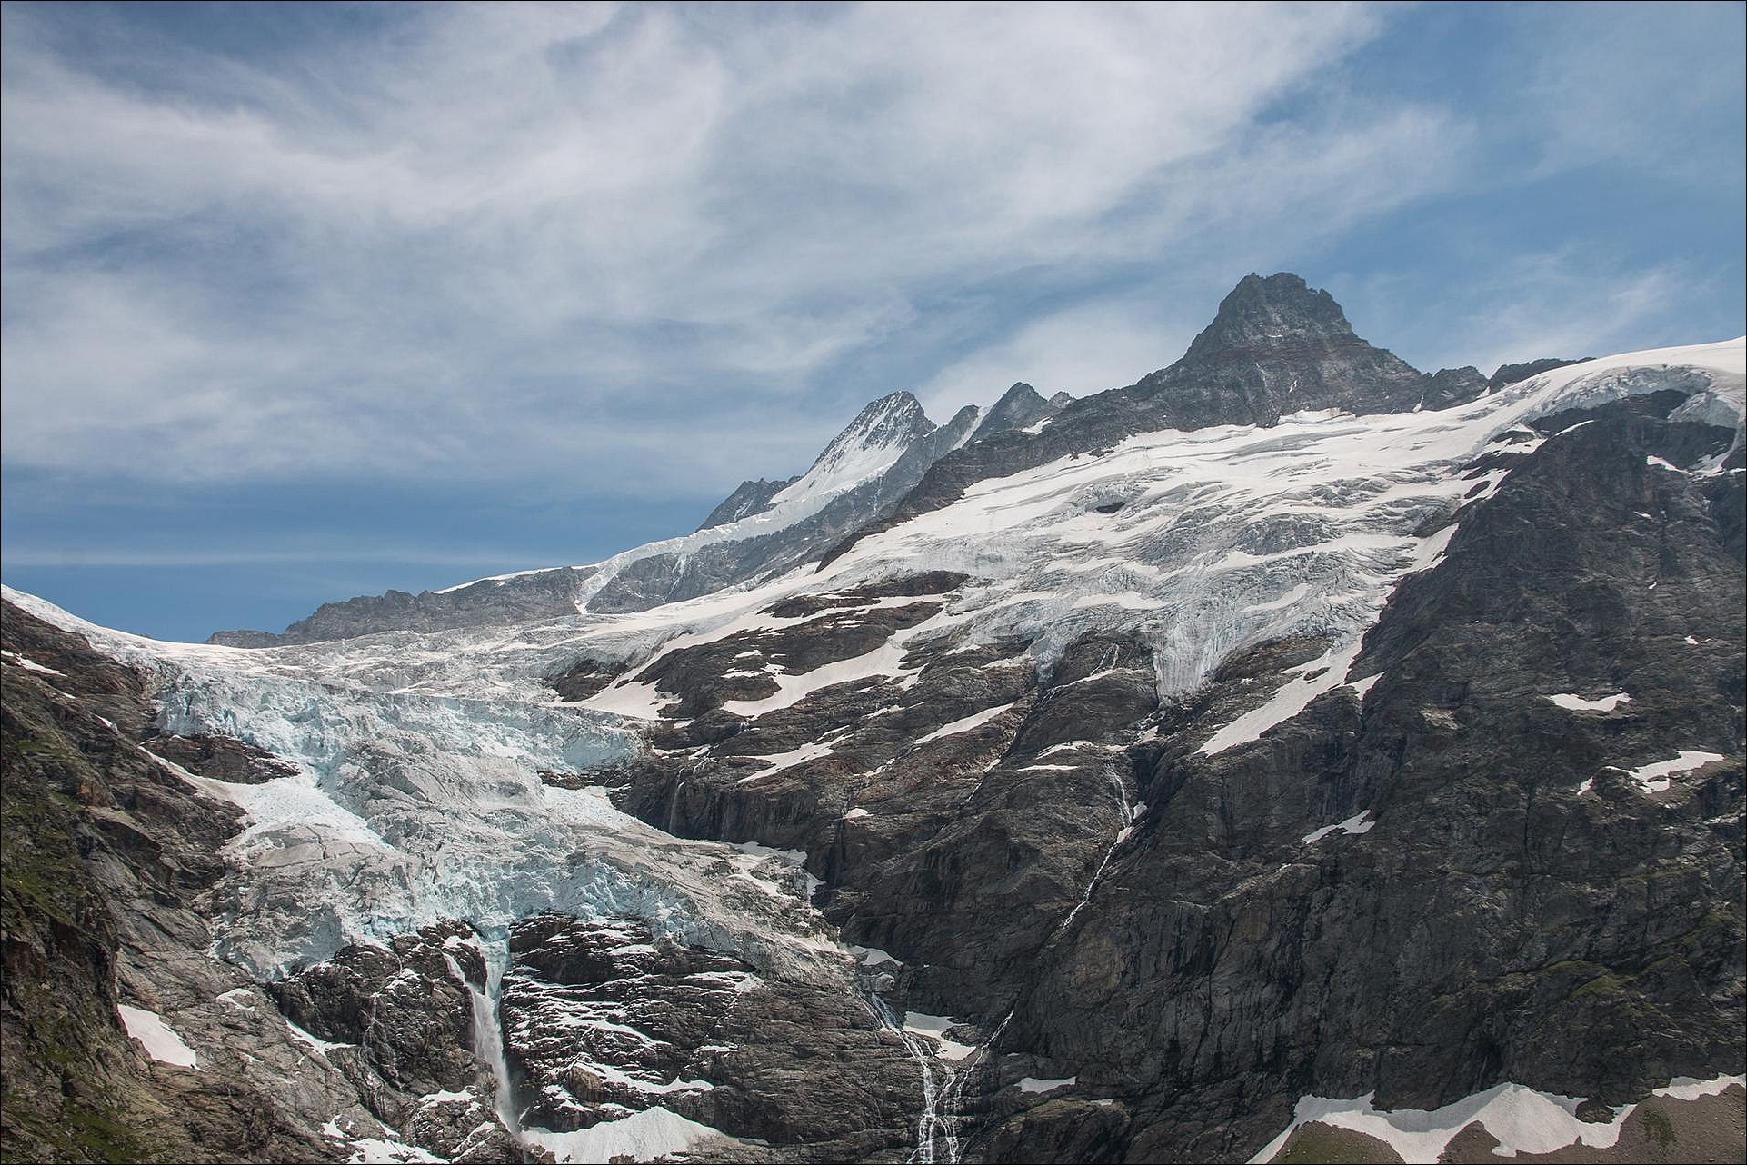 Figure 17: Photo of the upper Grindelwald Glacier, Bernese Alps (image credit: Christian Sommer)